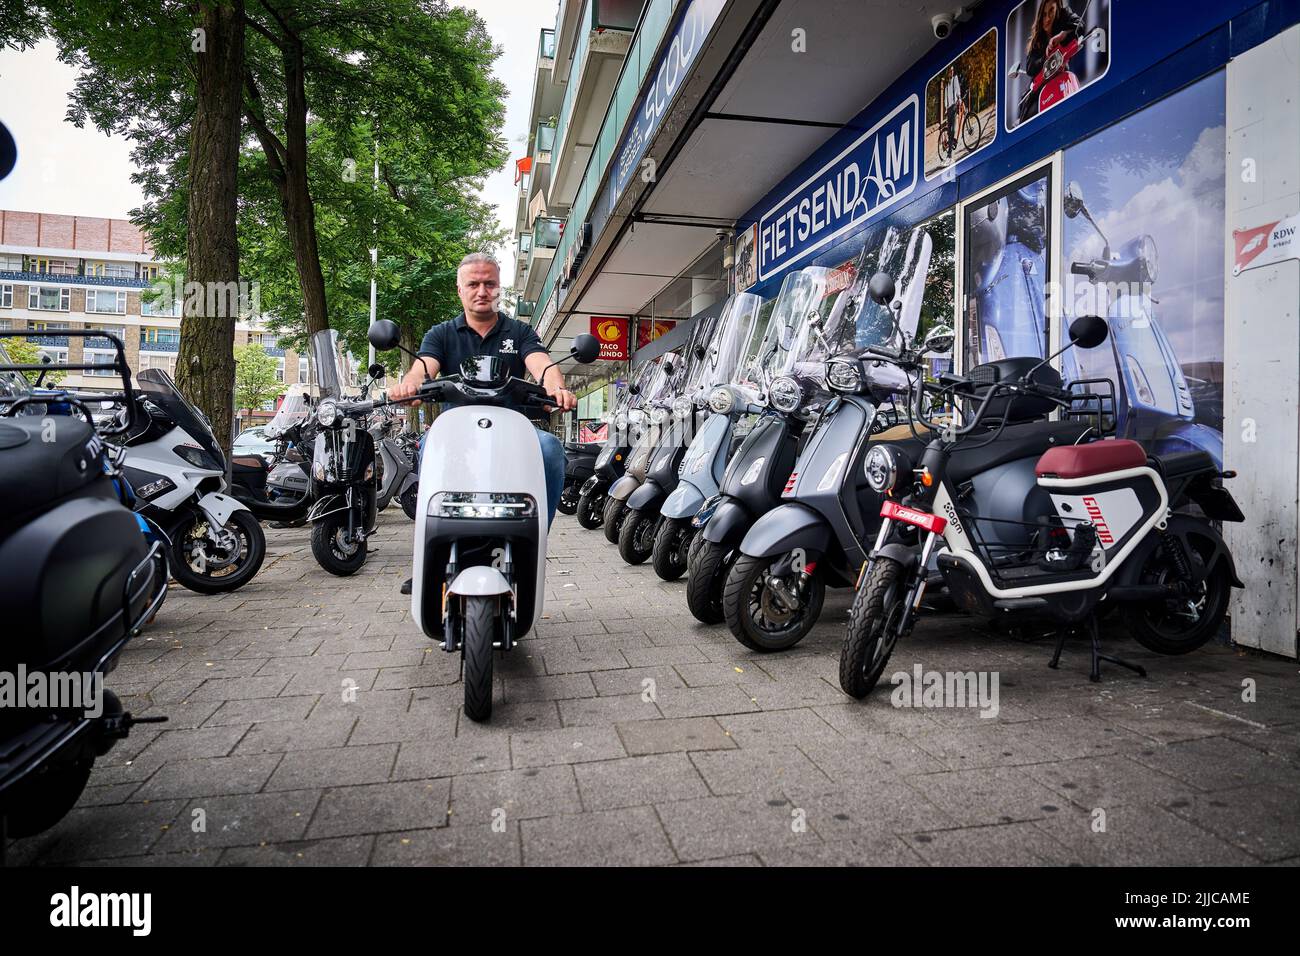 2022-07-25 13:03:33 ROTTERDAM - ein Elektroroller in einem Geschäft. Zum ersten Mal werden mehr elektrische Mopeds verkauft als benzinbetriebene Mopeds. In der ersten Jahreshälfte waren mehr als die Hälfte der verkauften Mopeds elektrisch. ANP PHIL NIJHUIS niederlande Out - belgien Out Stockfoto